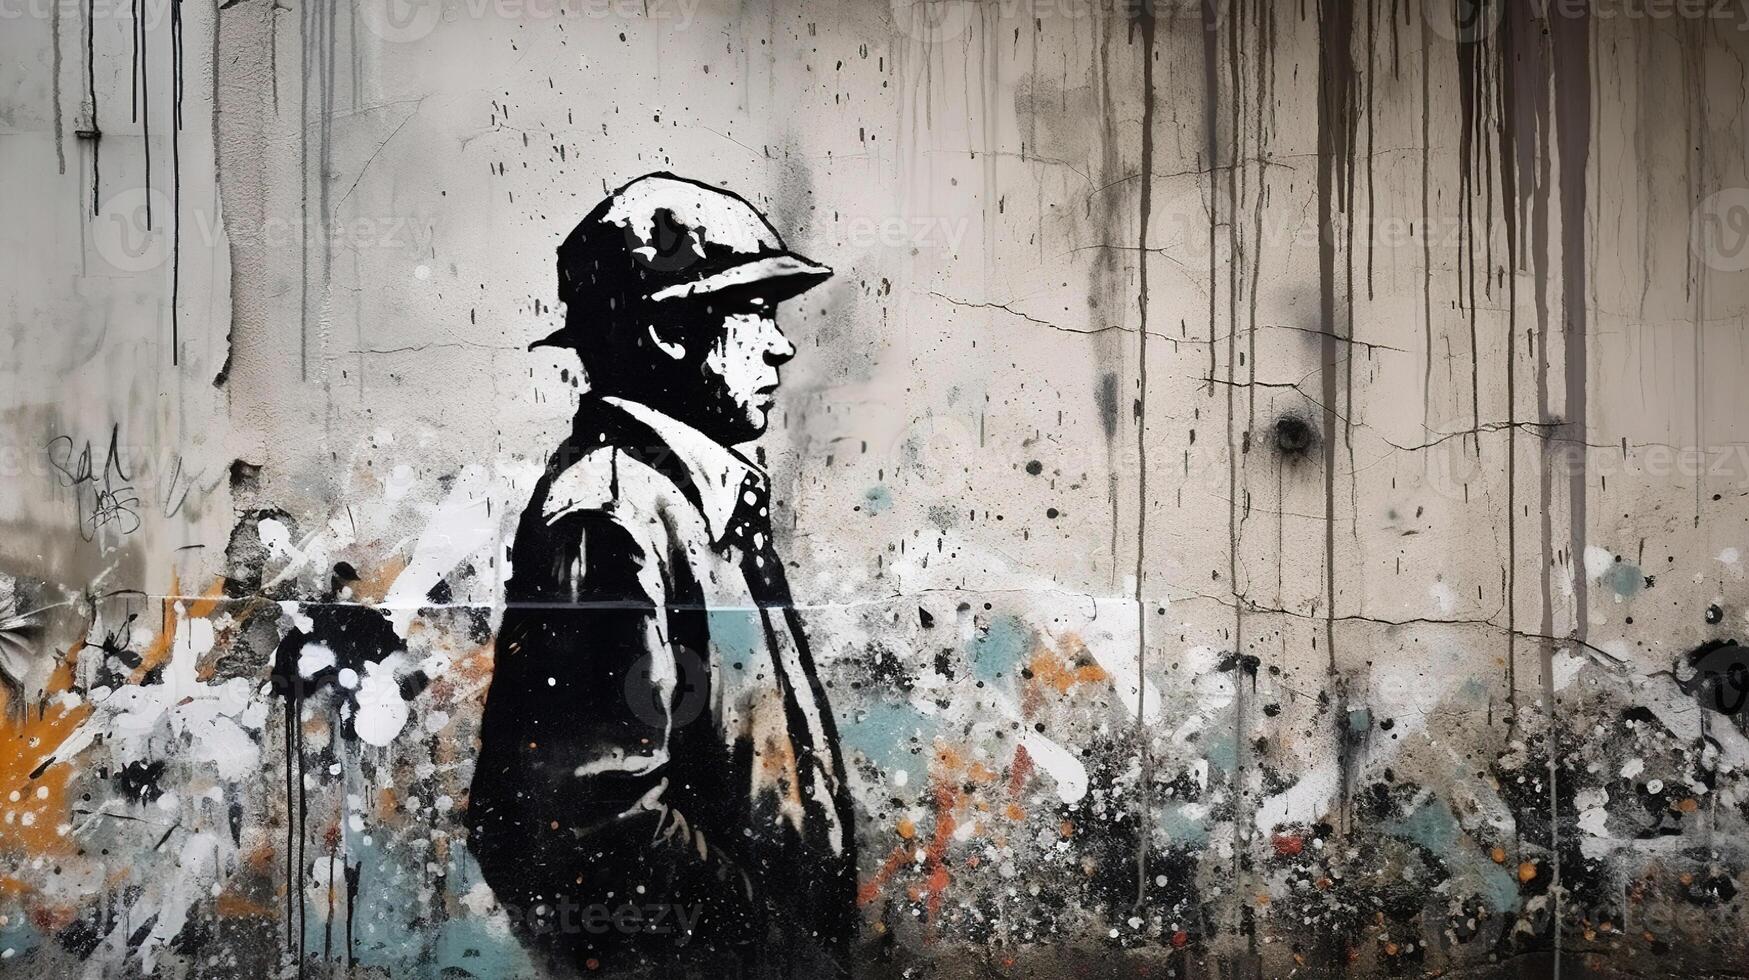 generativo ai, tinta Preto rua grafite arte em uma texturizado papel vintage fundo, inspirado de banksy. foto